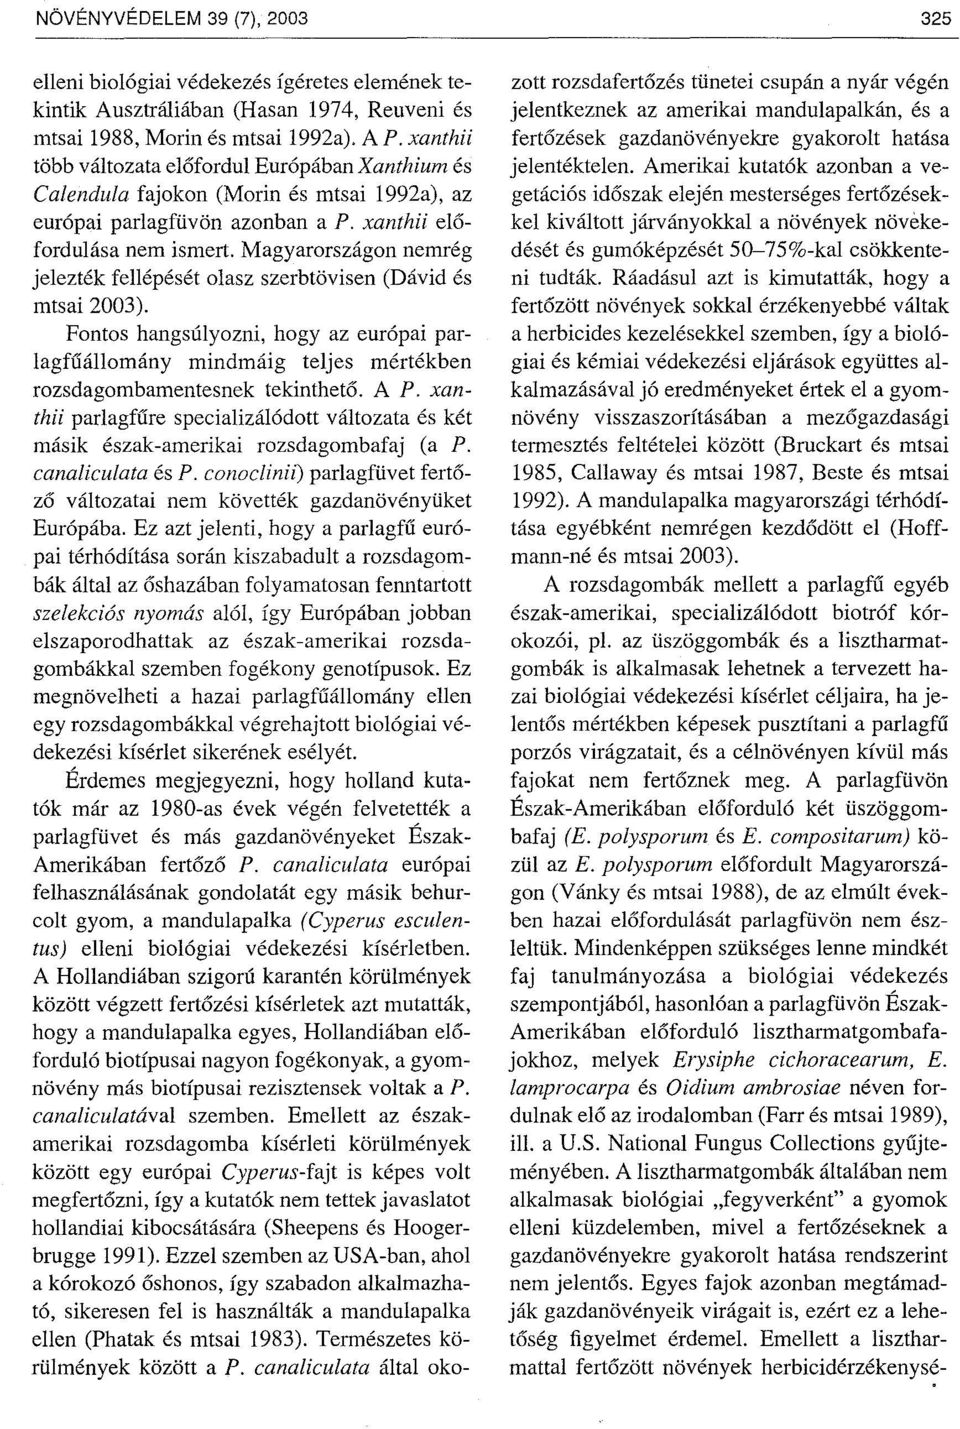 Magyarországon nemrég jelezték fellépését olasz szerbtövisen (Dávid és mtsai 2003). Fontos hangsúlyozni, hogy az európai parlagfuállomány mindmáig teljes mértékben rozsdagombamentesnek tekintheto. AP.